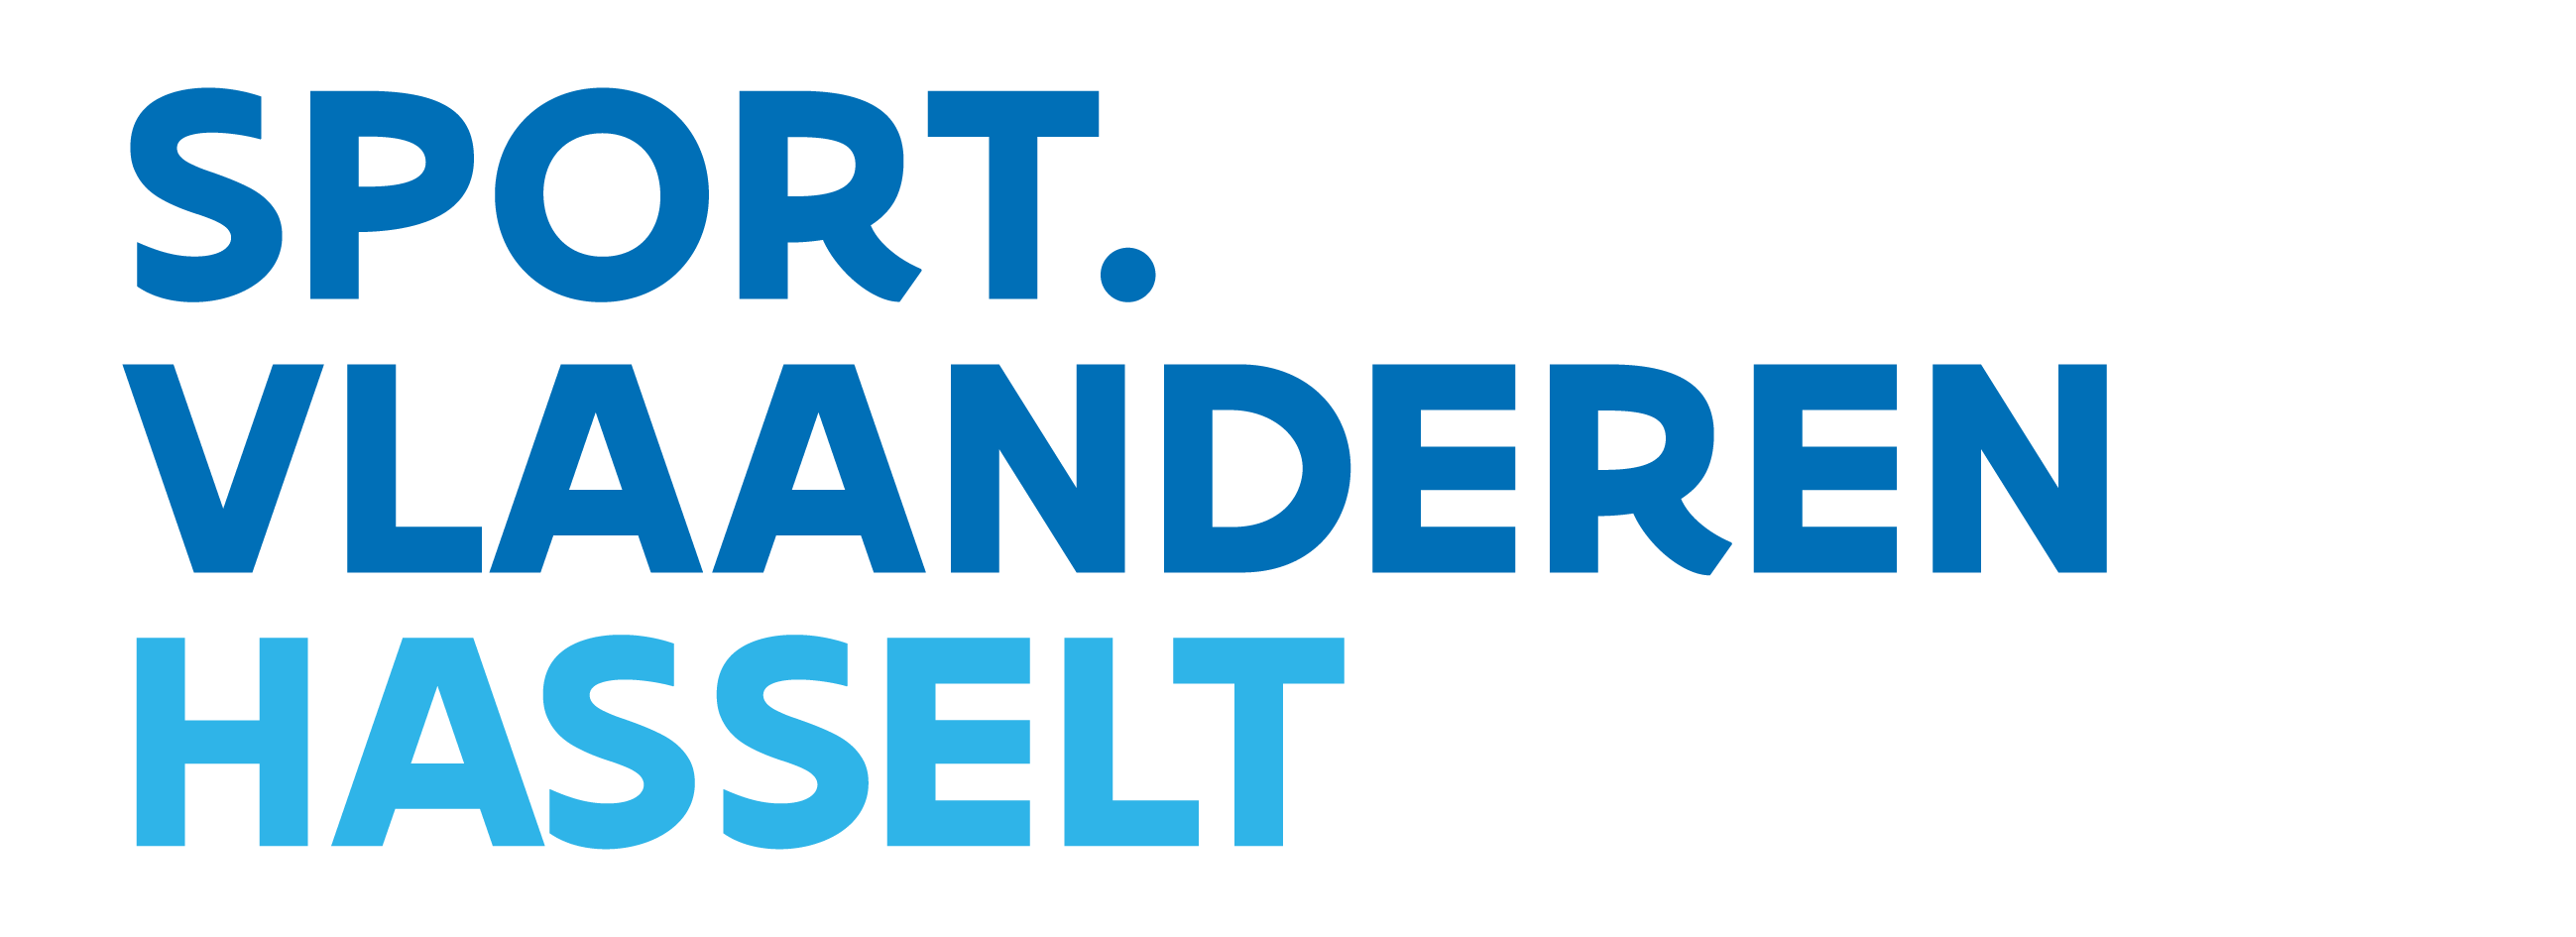 Logo Sport Vlaanderen Openingsuren